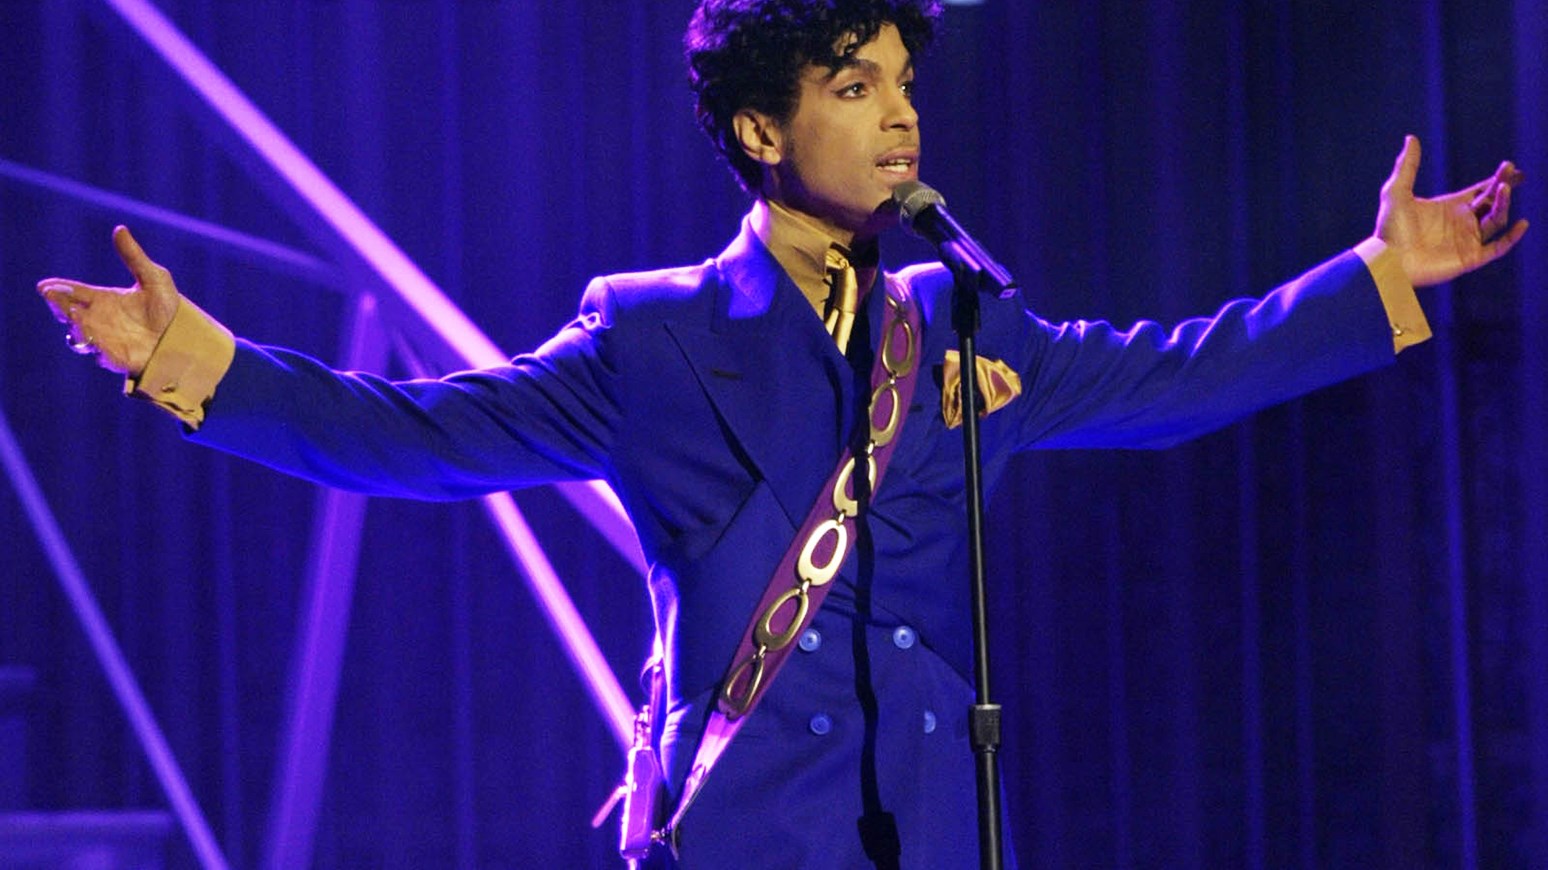 Ποιοι θα κληρονομήσουν την περιουσία του Prince